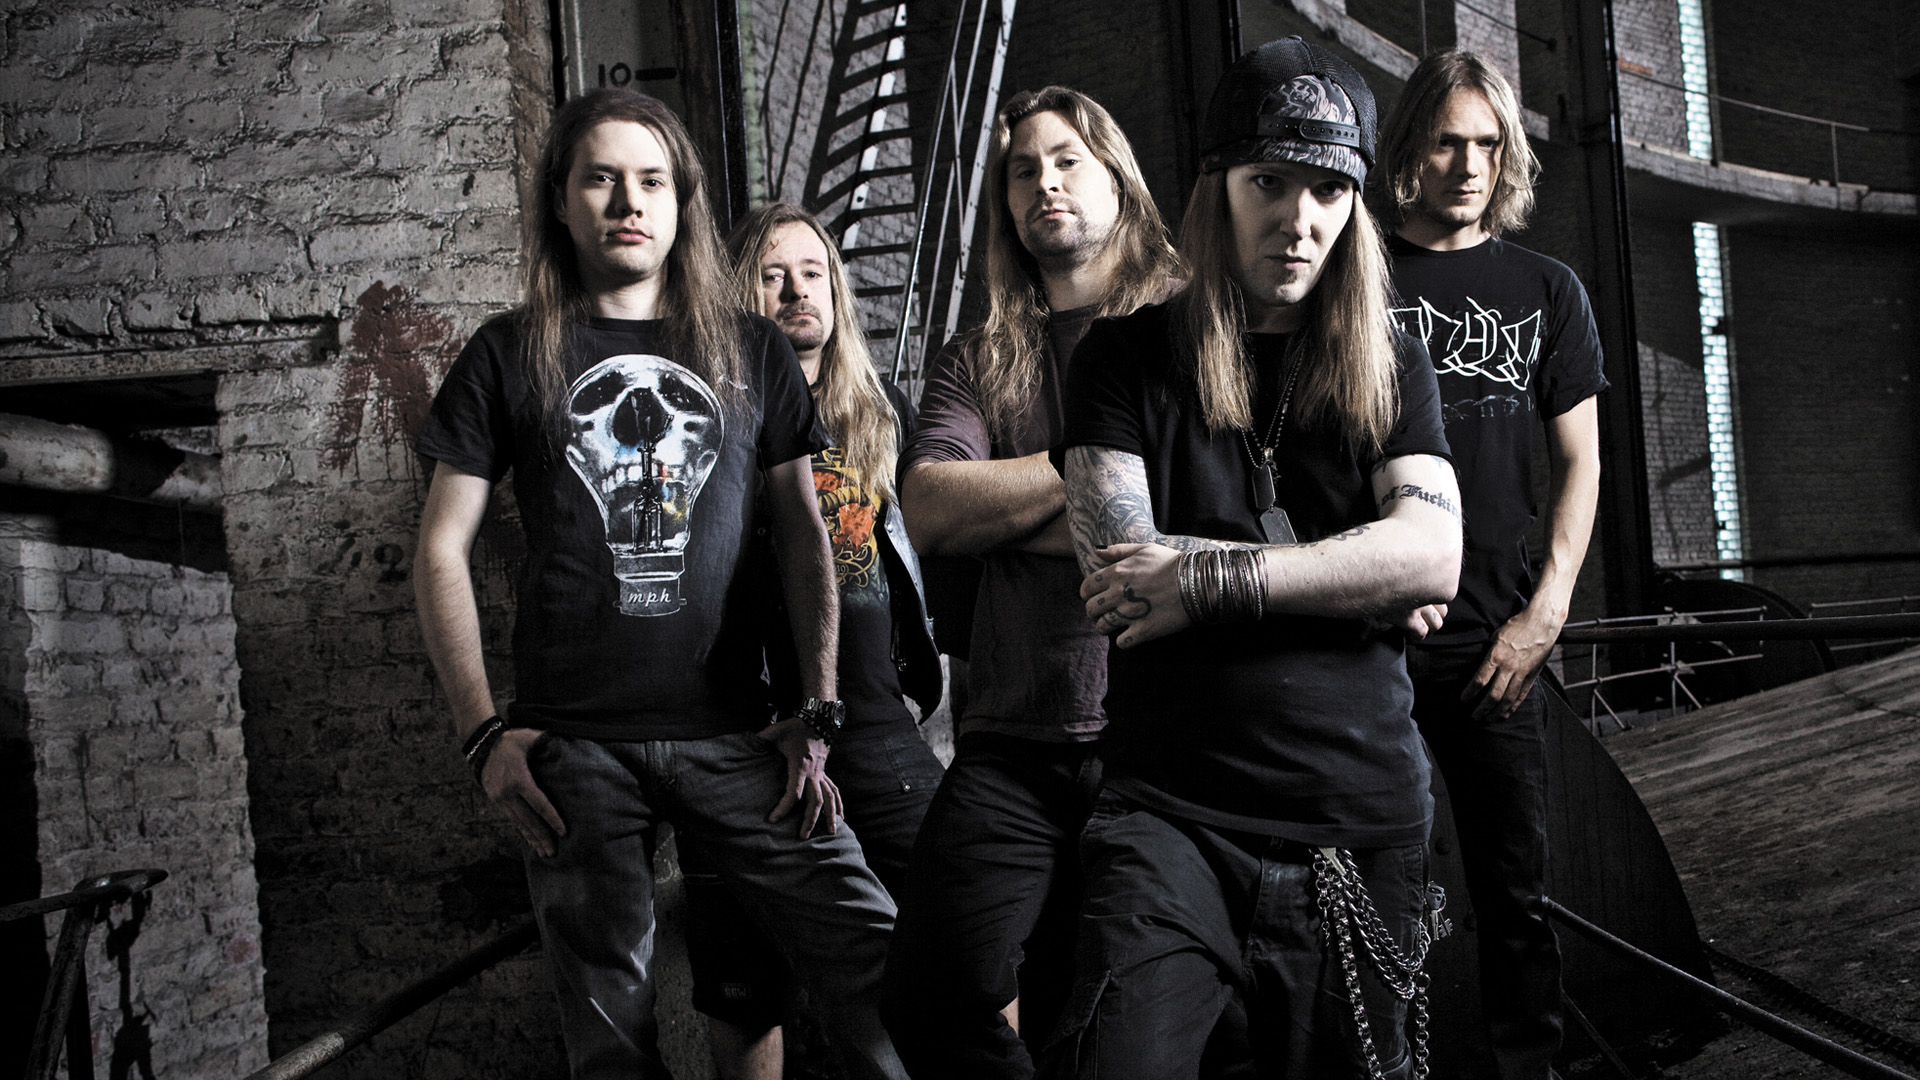 Jubileumi turnéra készül a Children Of Bodom